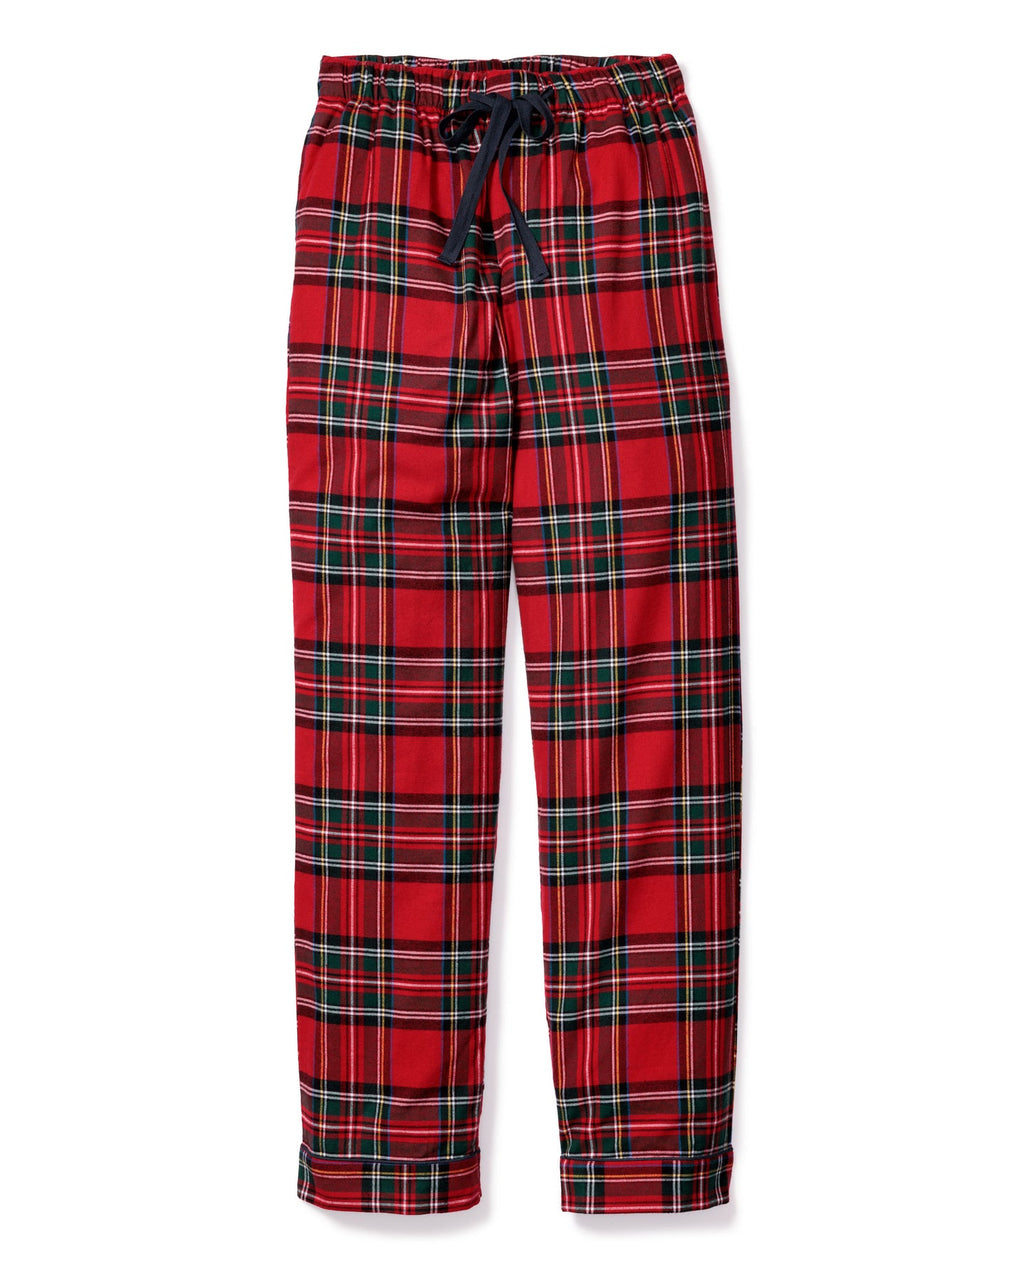 Petite Plume Men's Pajama Pants in Imperial Tartan